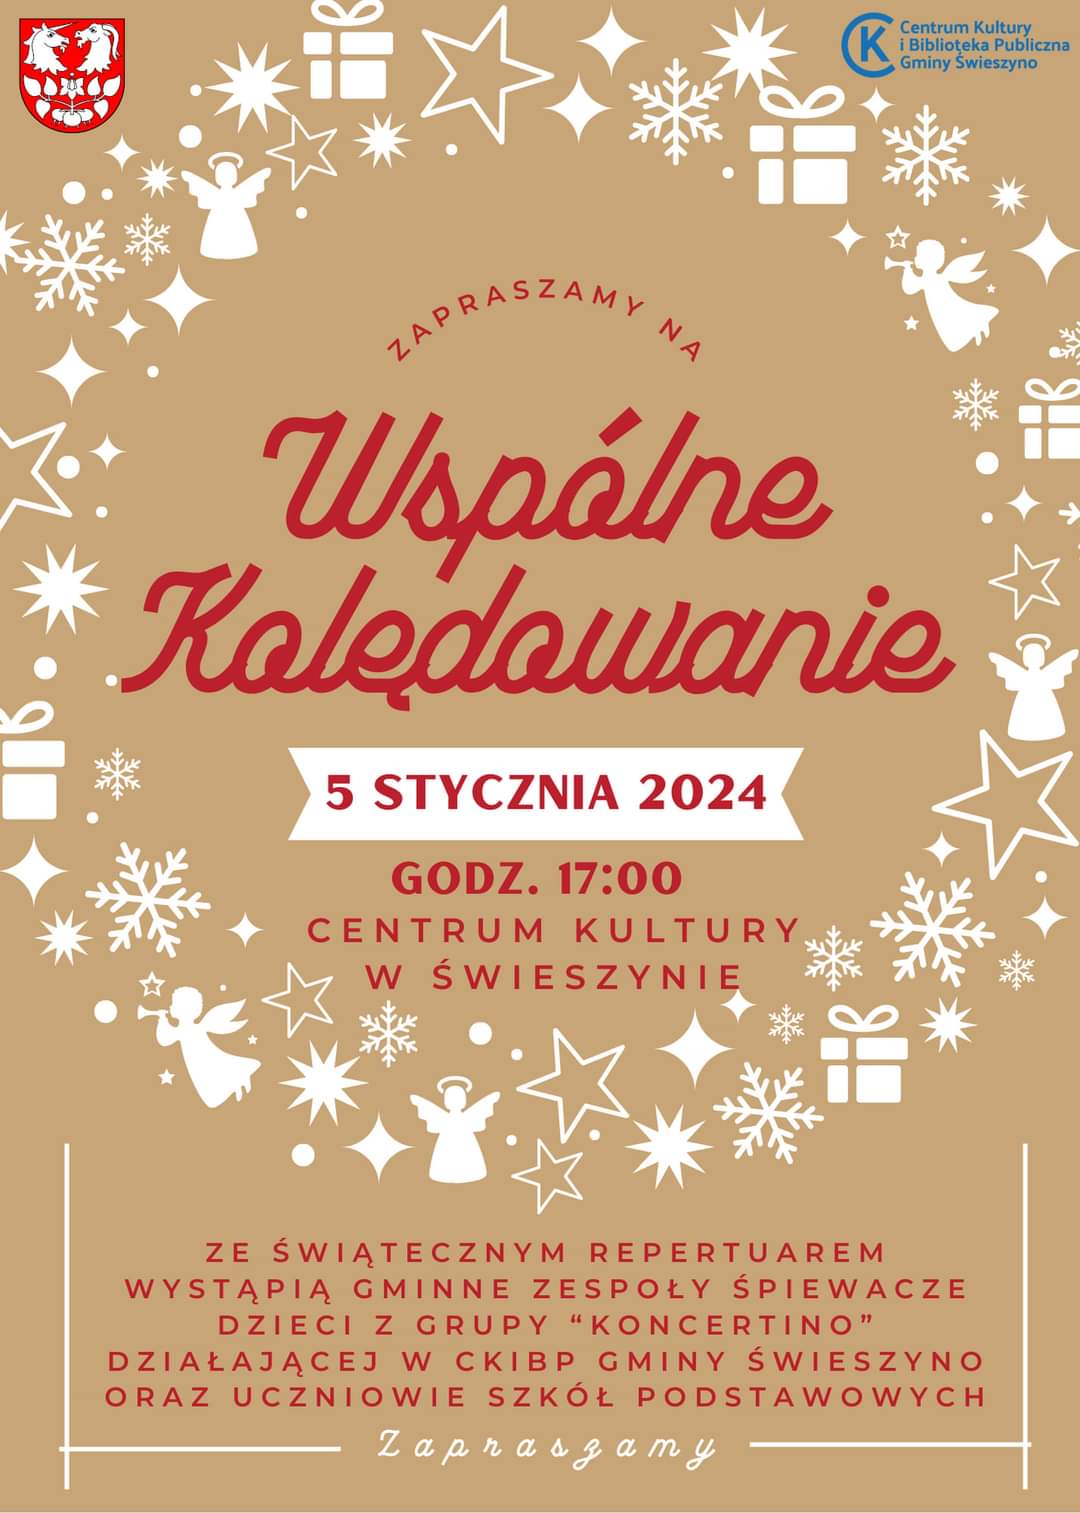 Plakat z zaproszeniem na wspólne kolędowanie w Świeszynie 5 stycznia 2024